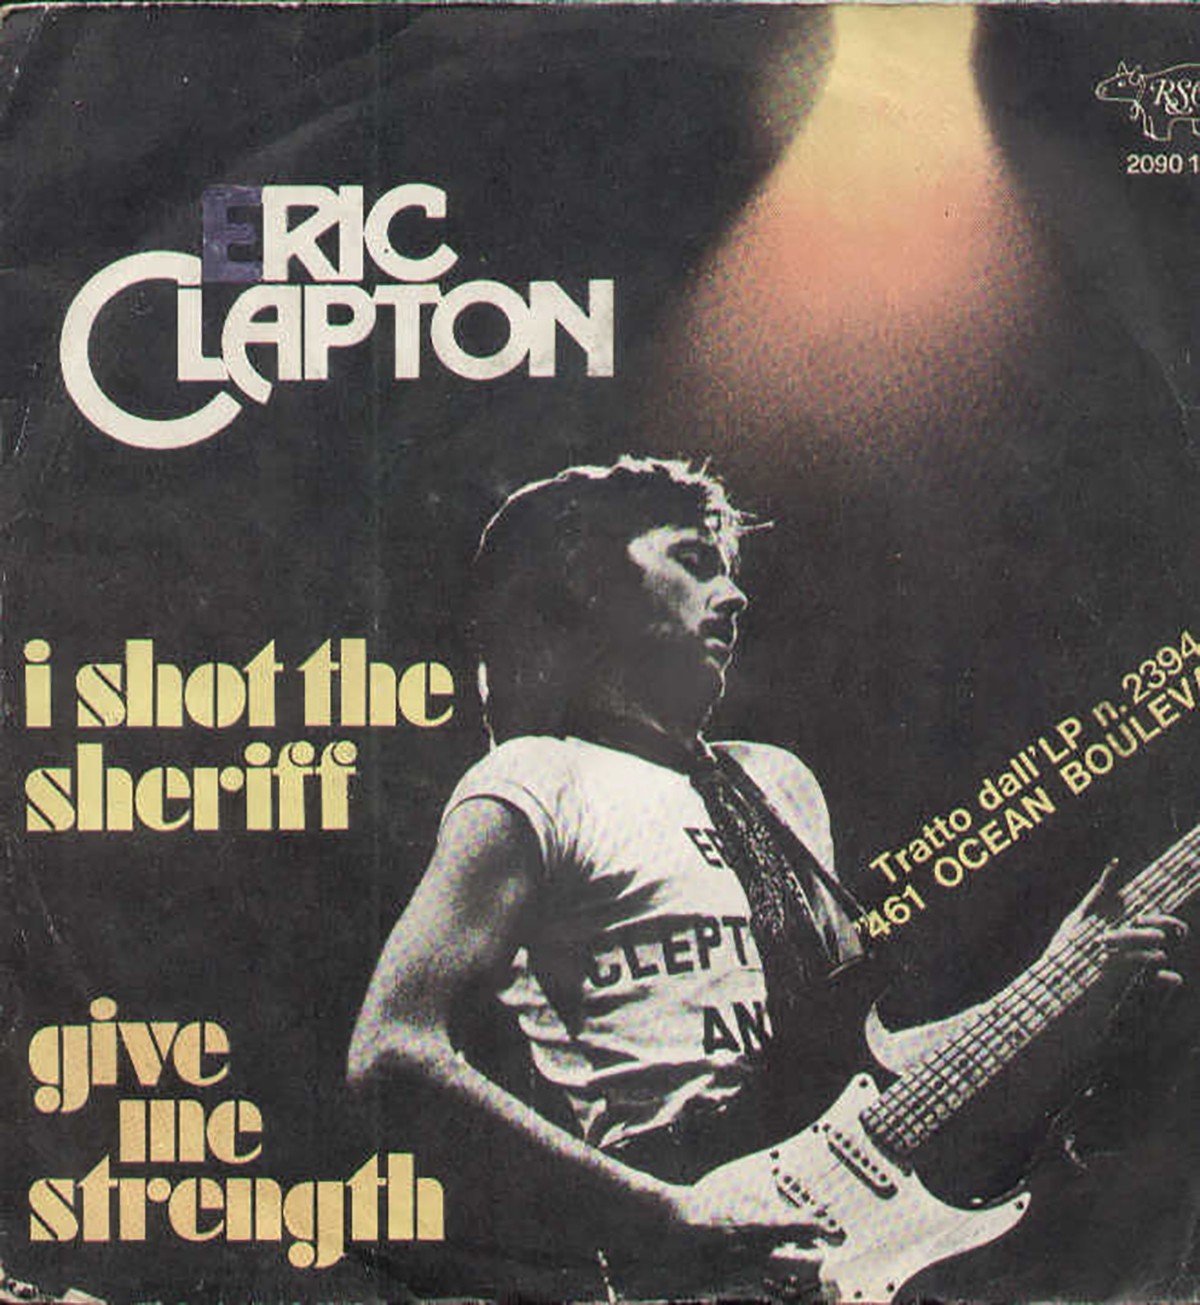 Eric Clapton - Eu matei o xerife